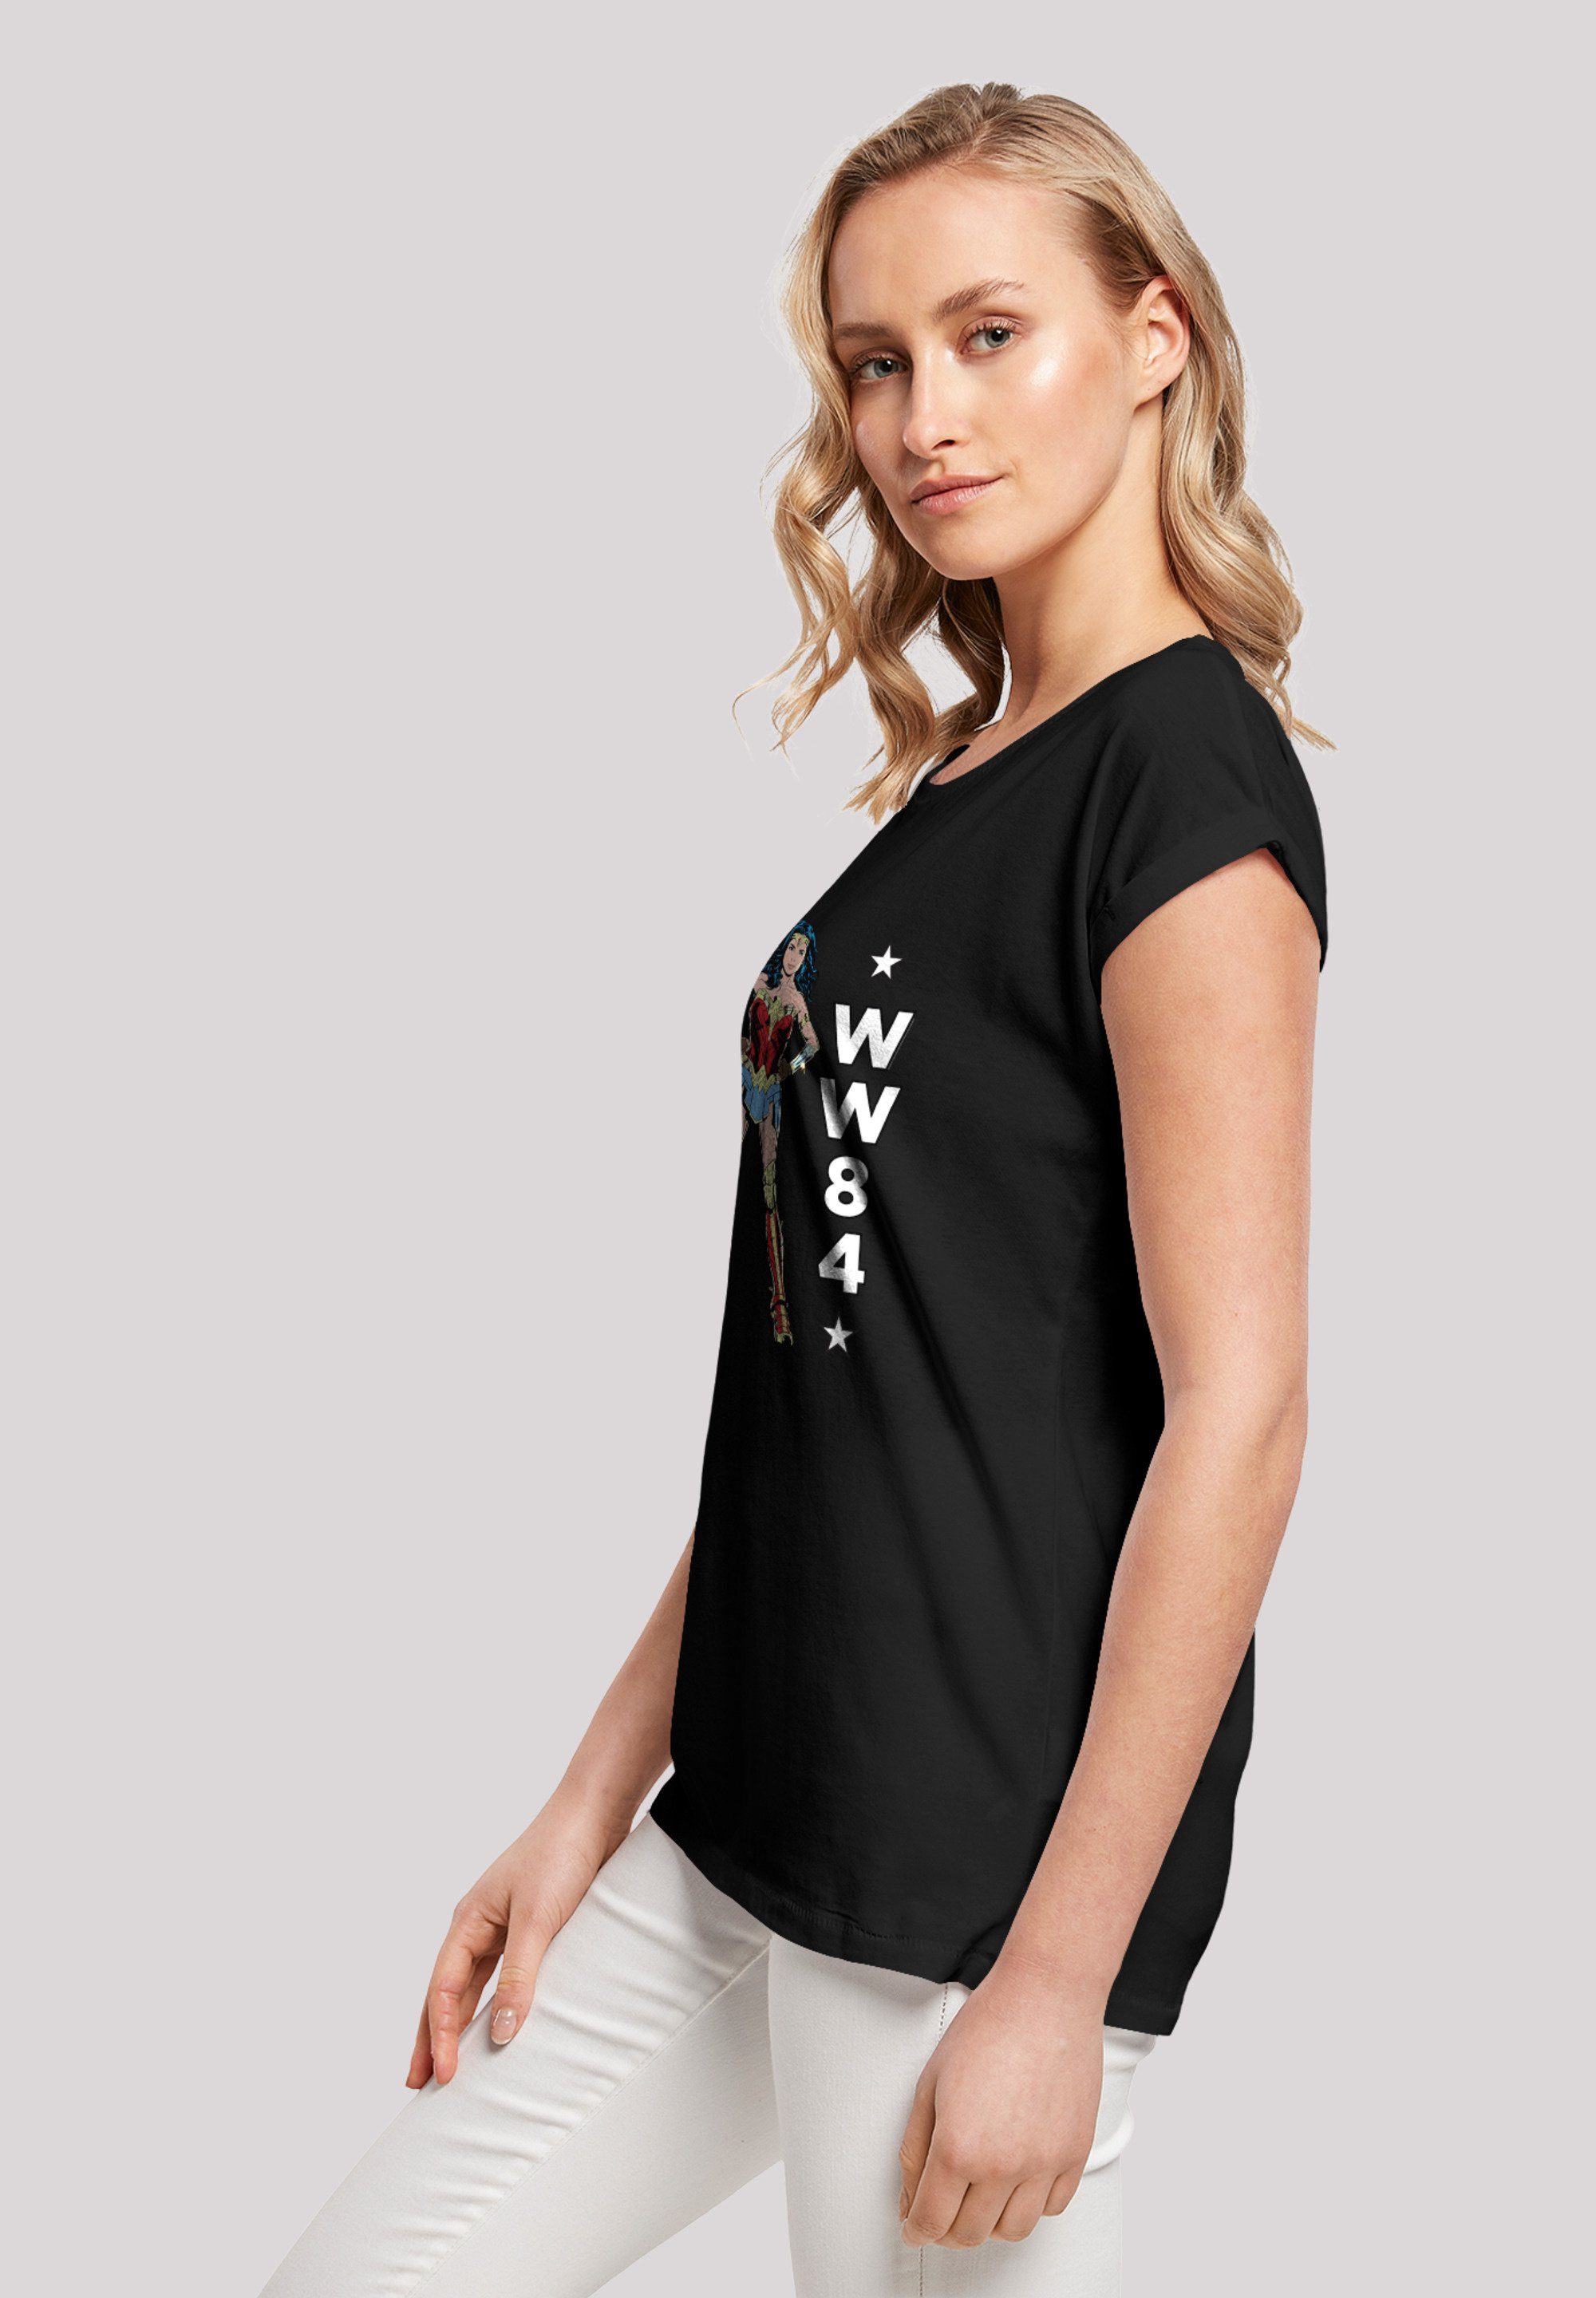 F4NT4STIC T-Shirt Ärmel,Bedruckt Merch,Regular-Fit,Kurze F4NT4STIC T-Shirt Damen,Premium